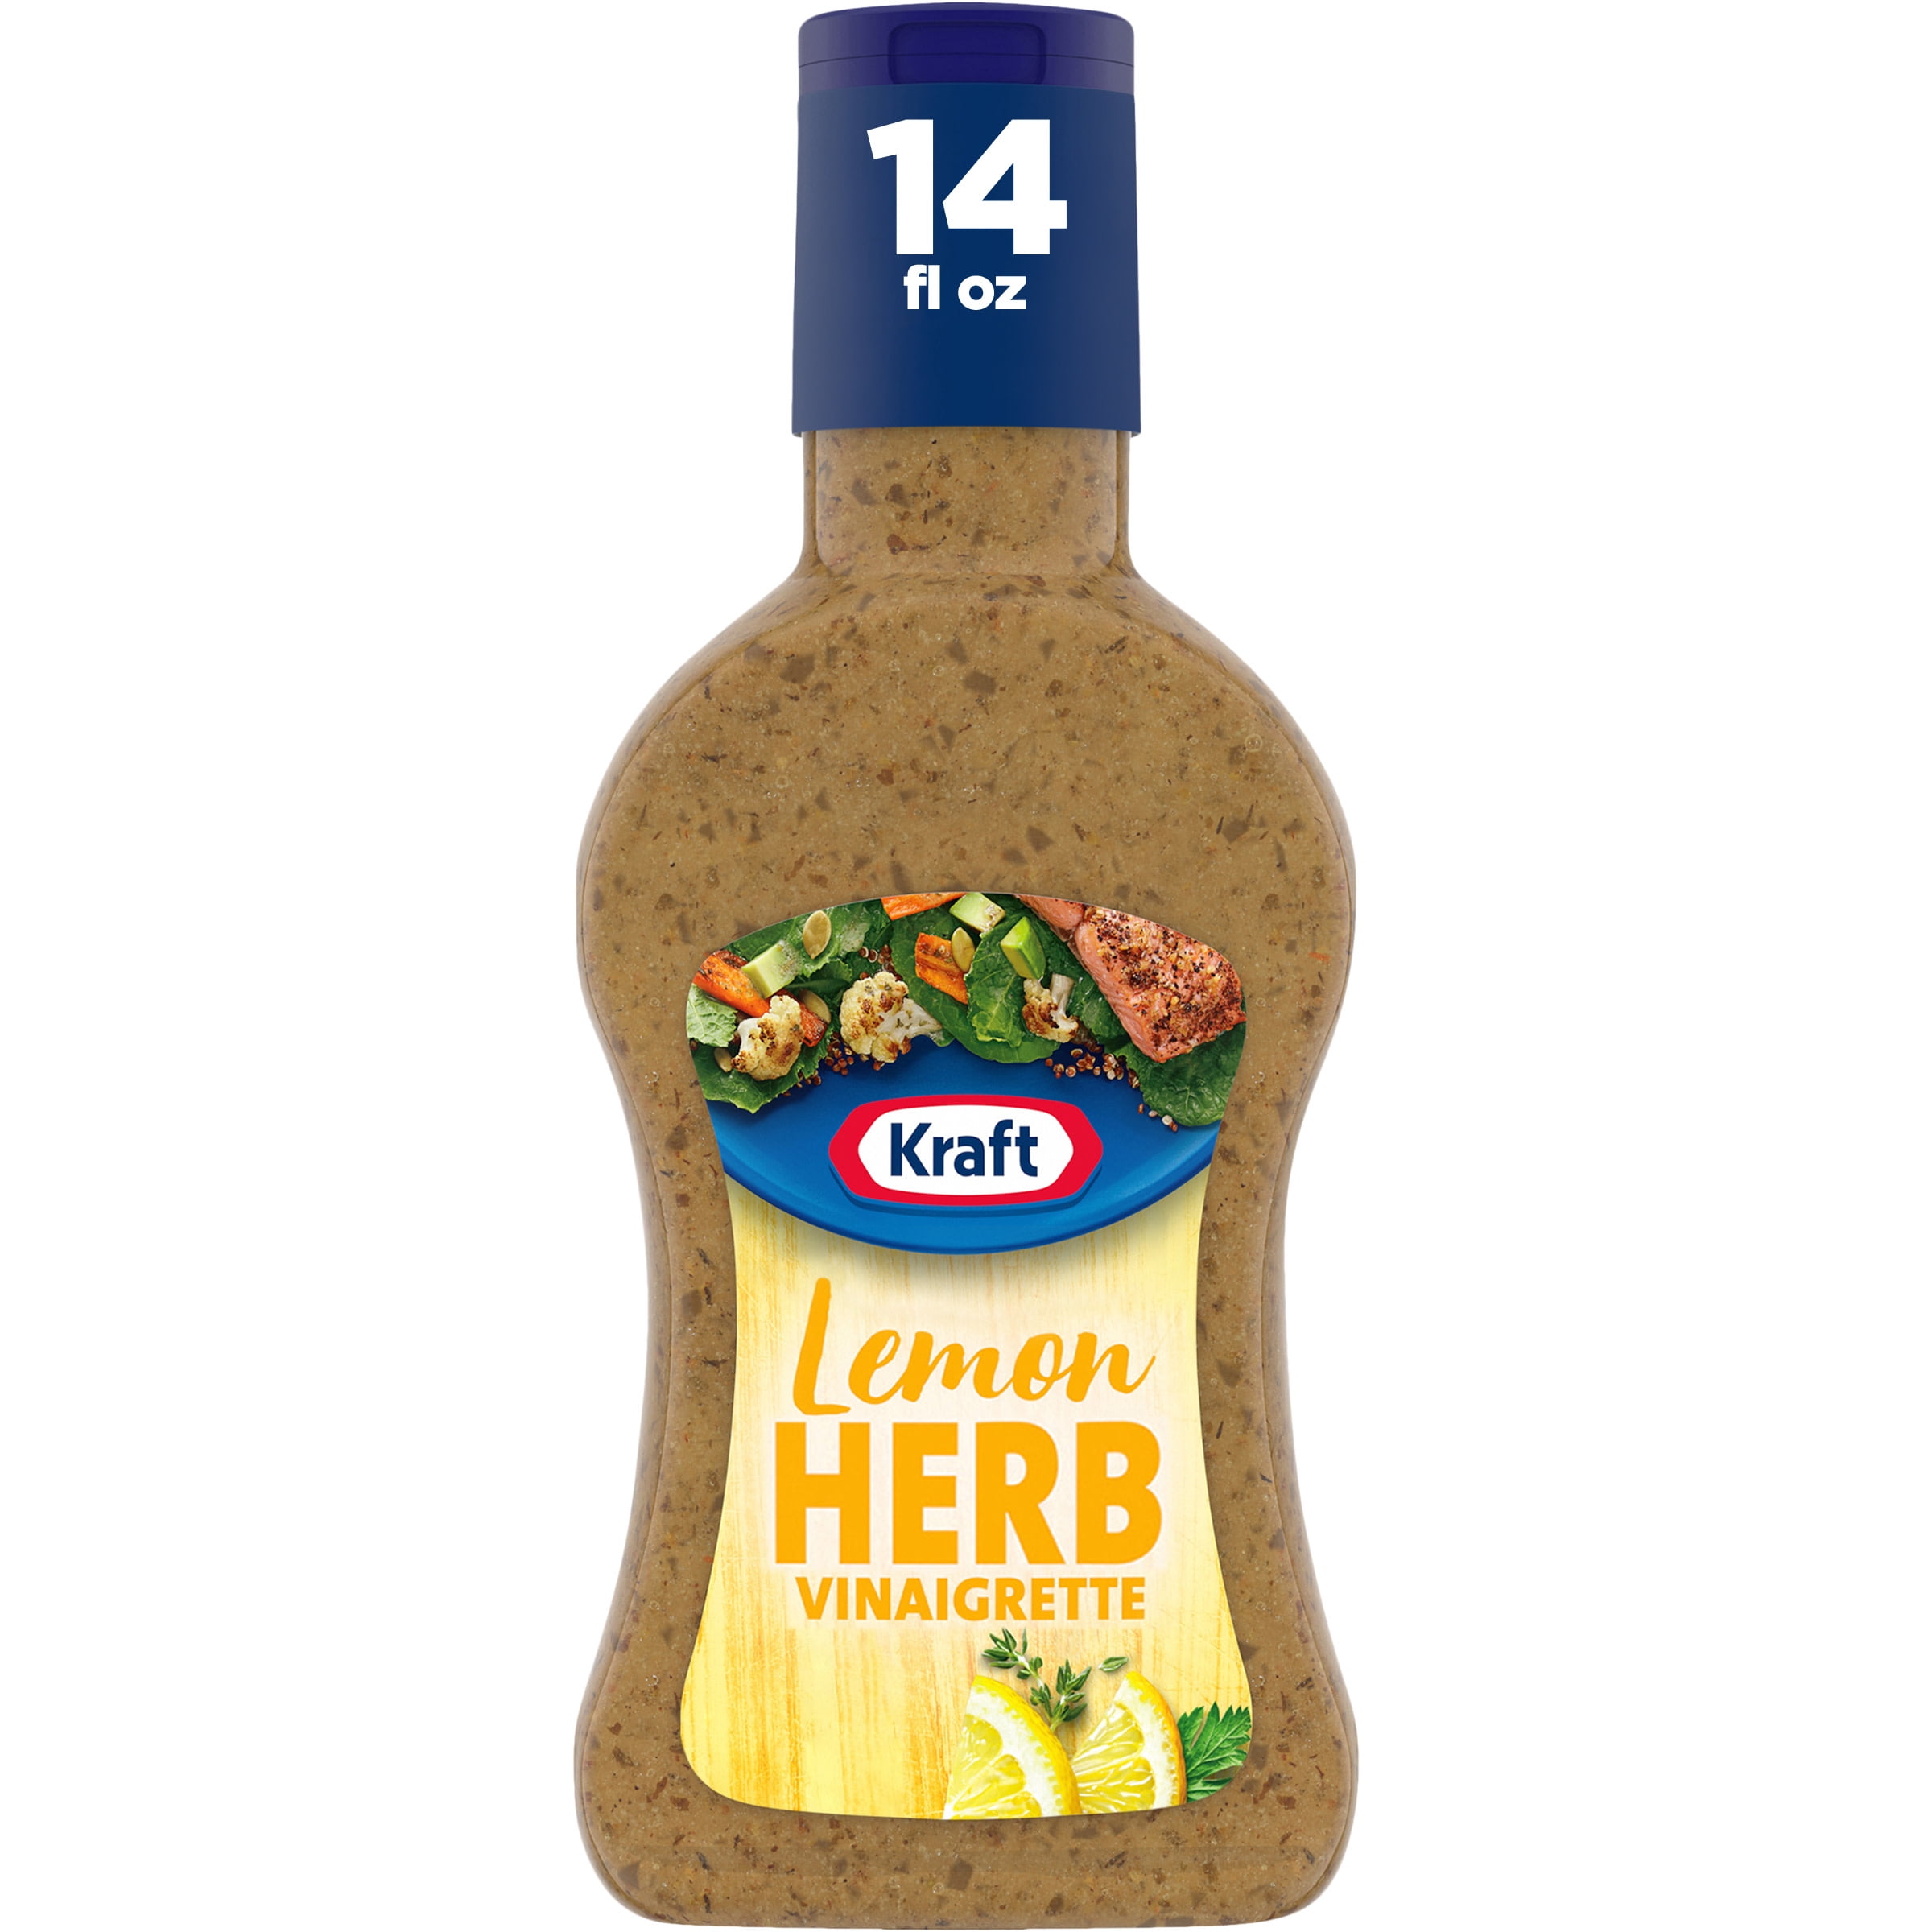 Kraft Lemon Herb Vinaigrette Salad Dressing, 14 fl oz Bottle